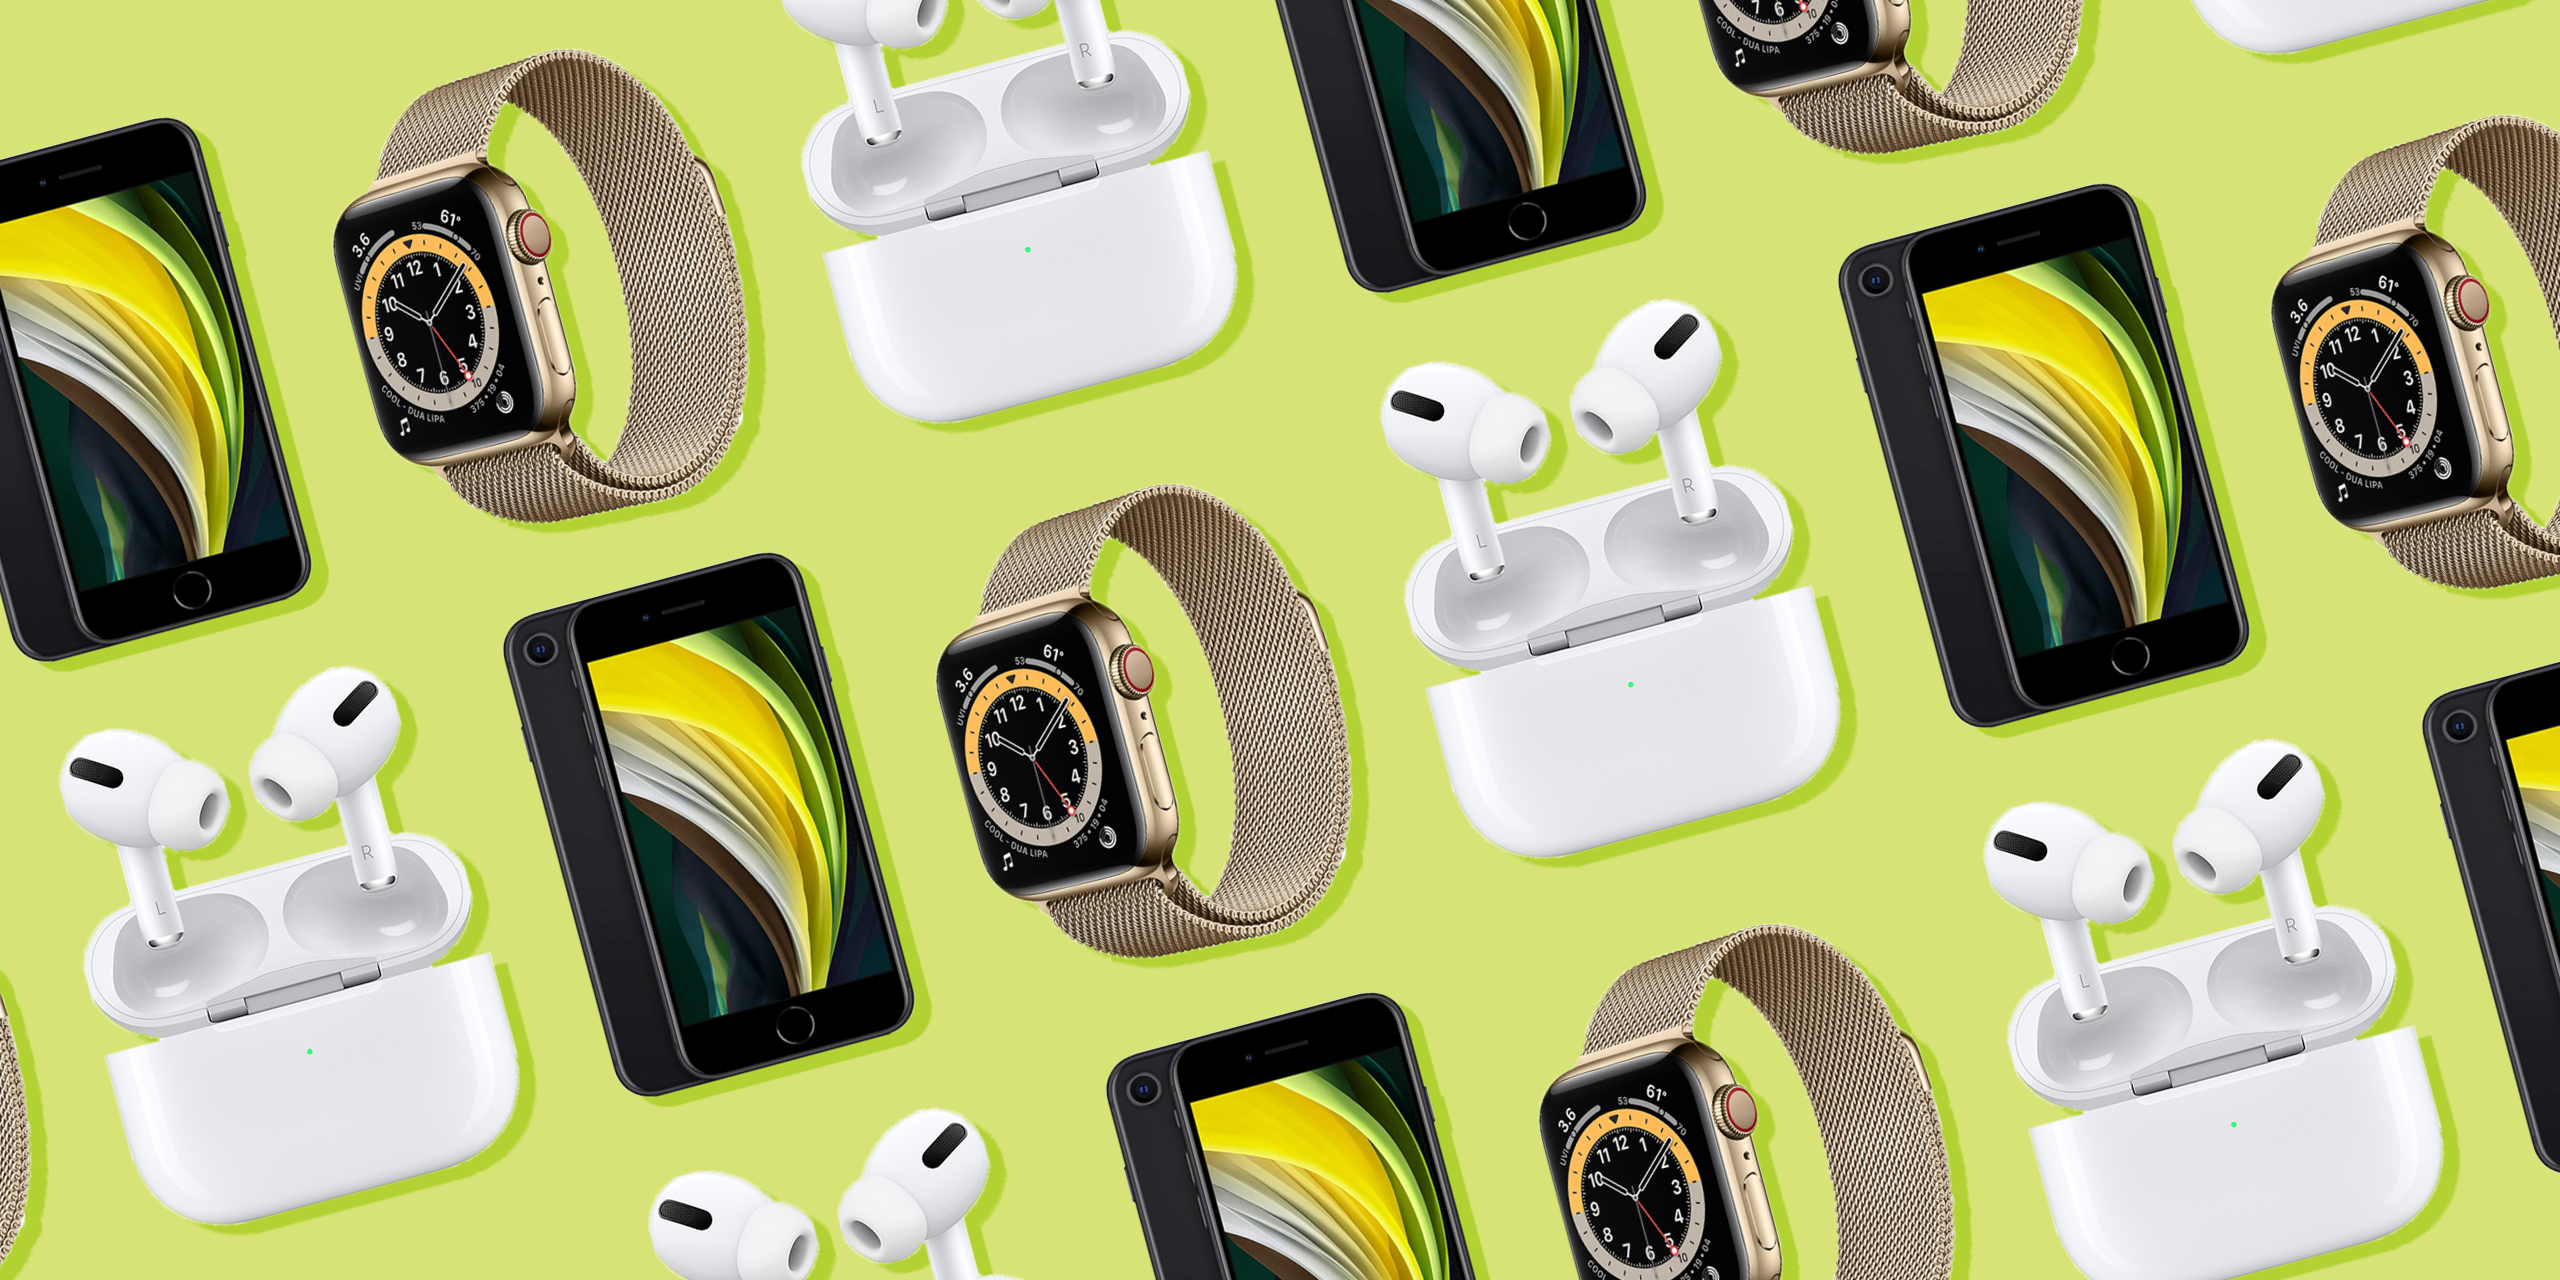  iPhones, AirPods, relojes y más